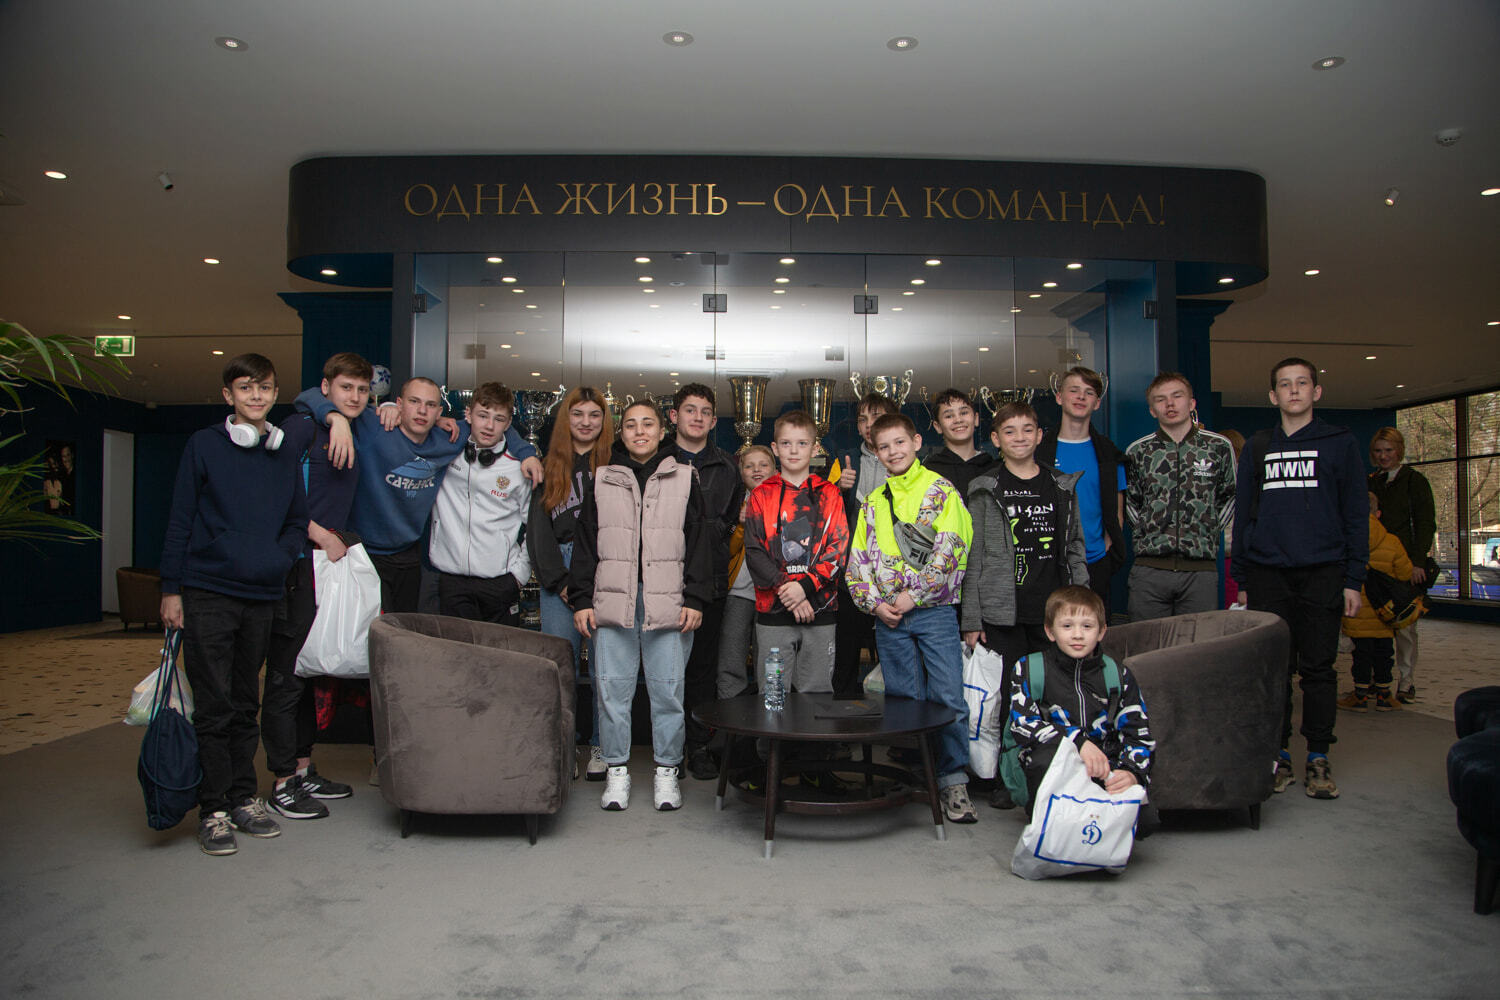 Noticias del FC "Dynamo" Moscú | Día del "Dynamo" y del Banco VTB en la base de Novogorsk para niños de la región de Riazán. Sitio oficial del club Dynamo.